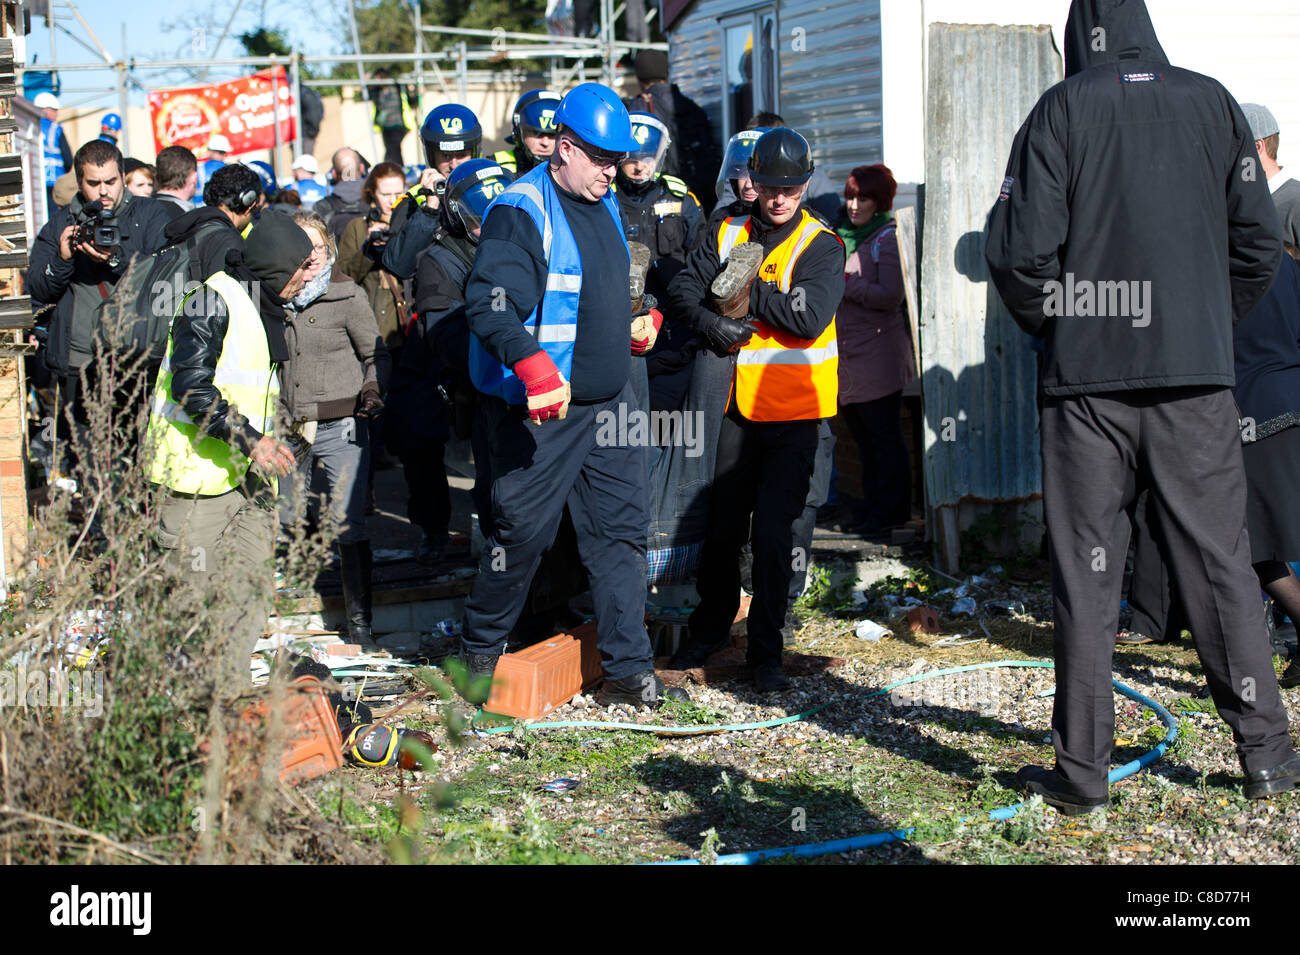 Dale Farm Räumung. Polizei und Gerichtsvollzieher führen ein Demonstrant, der festgenommen wurde. Stockfoto